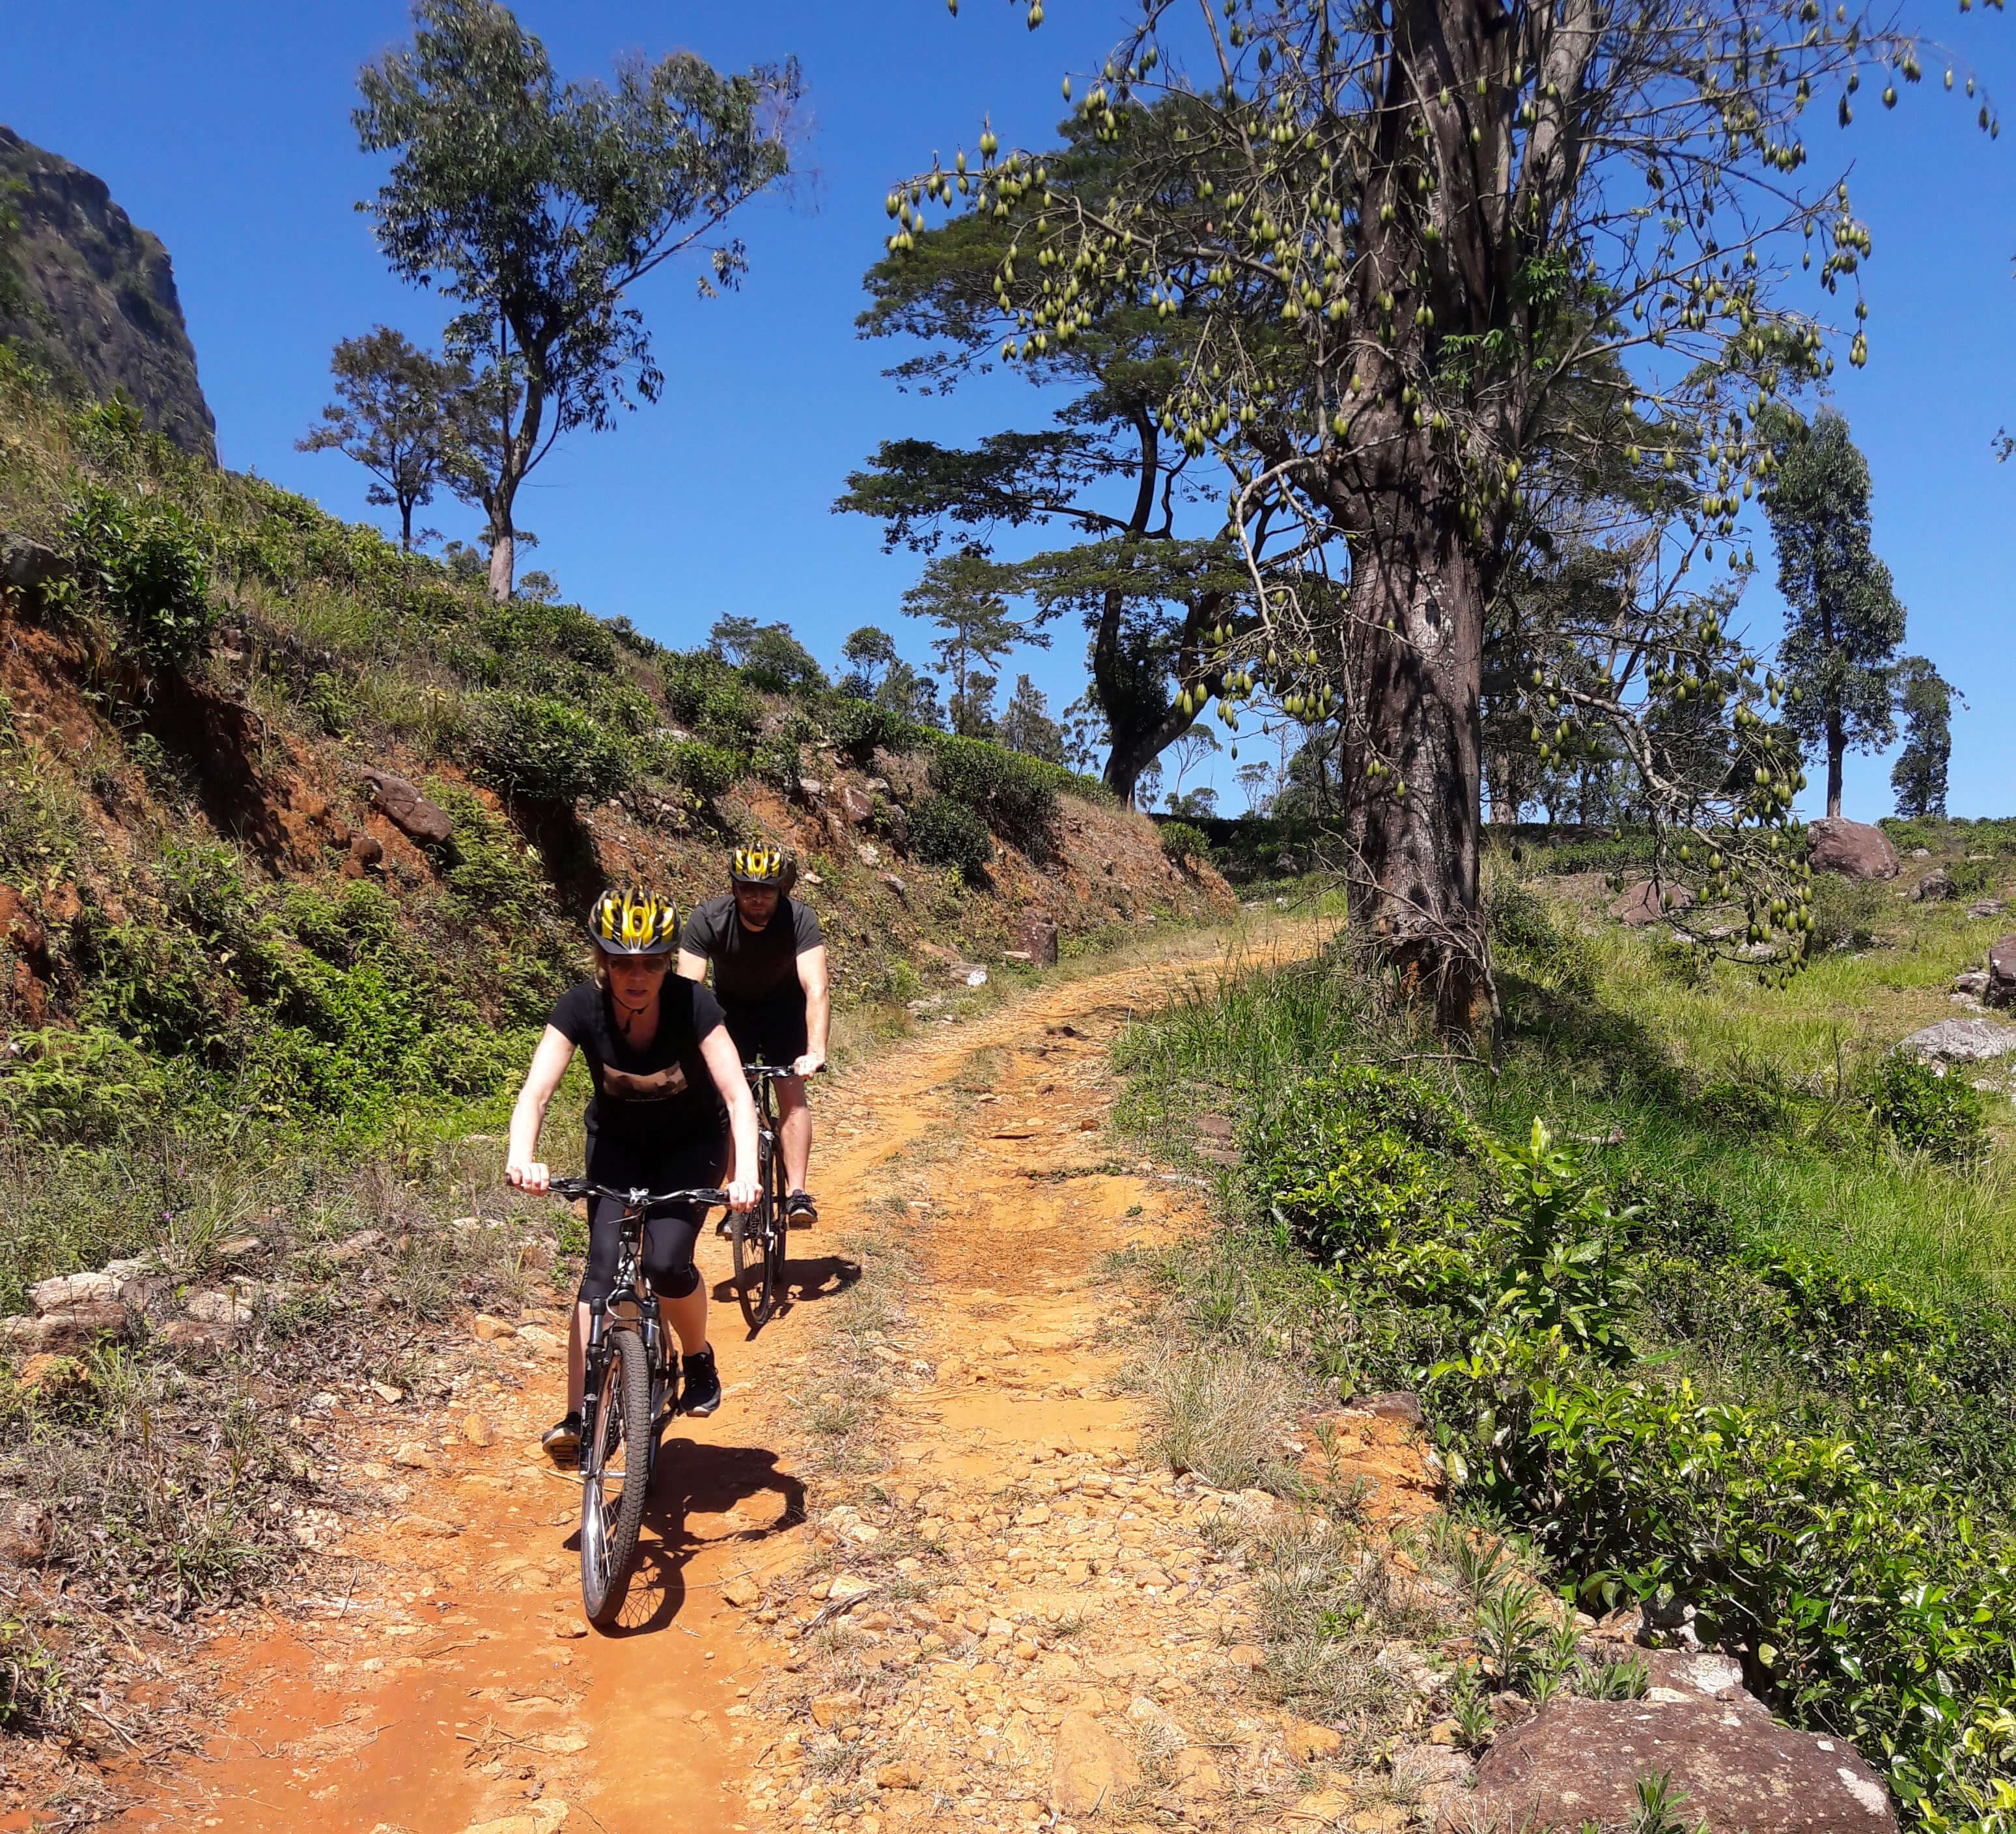 يحصل السائح على تجربة ركوب دراجات صعبة ومتوسطة المستوى في كاندي سريلانكا